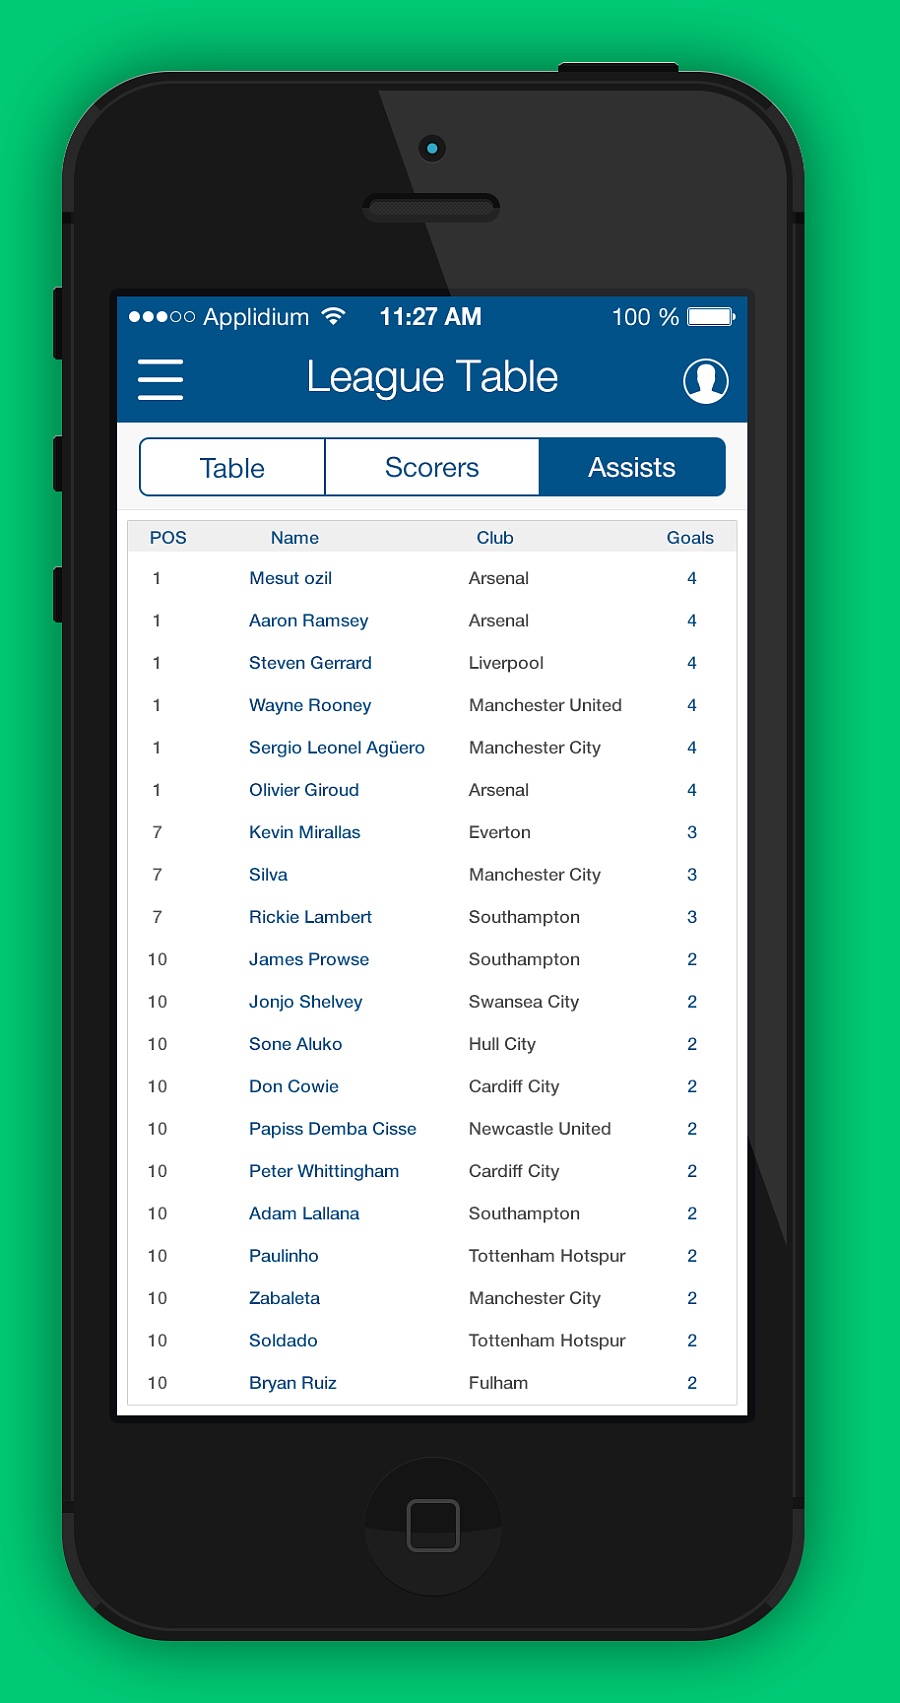 app界面设计--足球应用第四弹:积分榜、射手榜